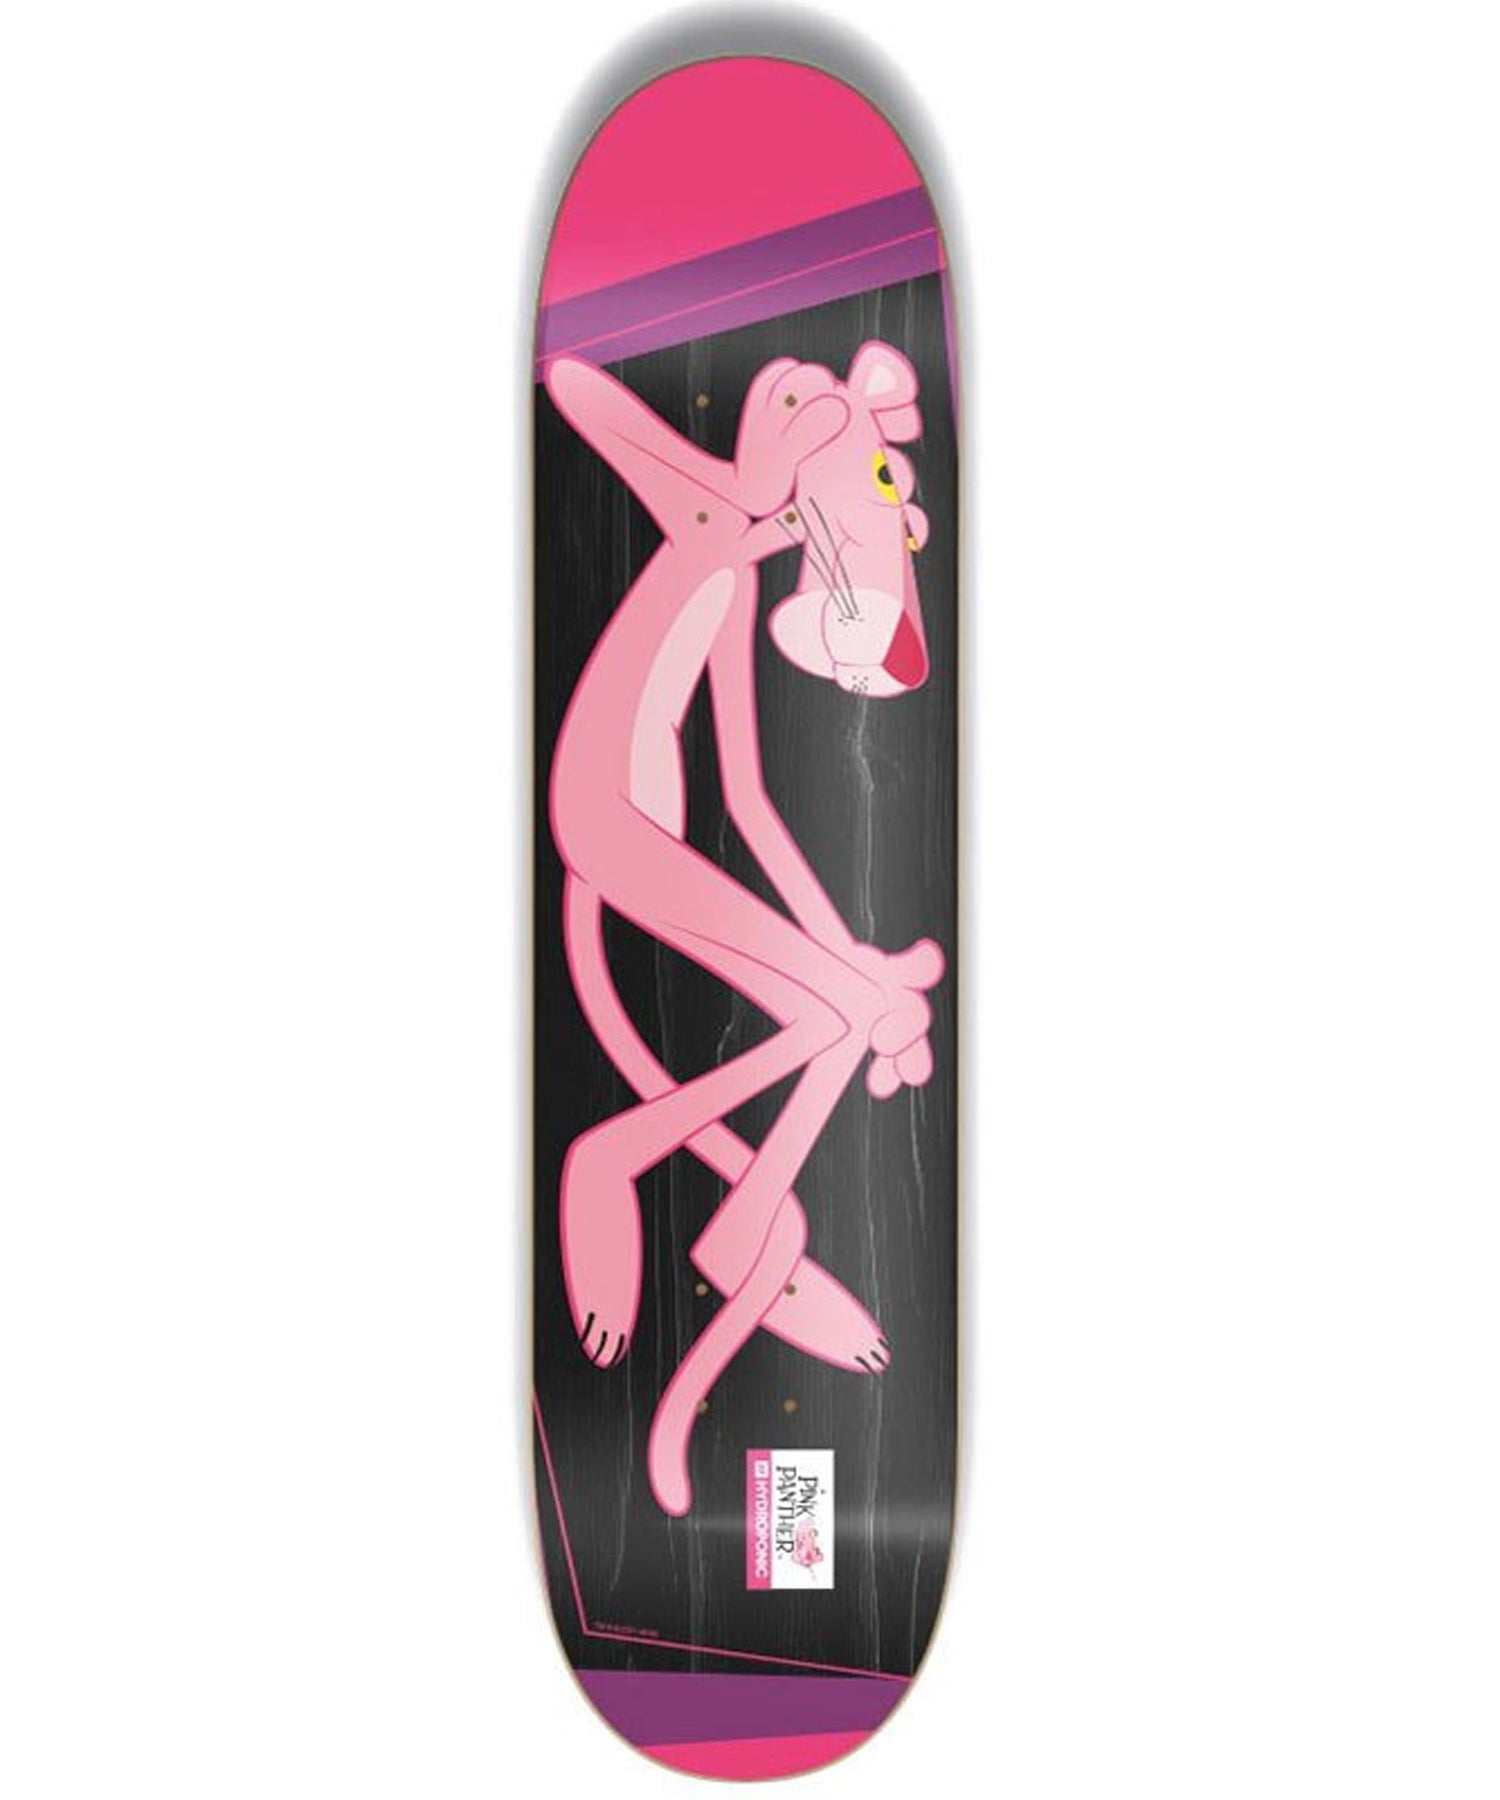 hydroponic-pink panther -8-375"-tabla de skate-8"-cóncavo-alto-7 capas de arce canadiense- con epoxy